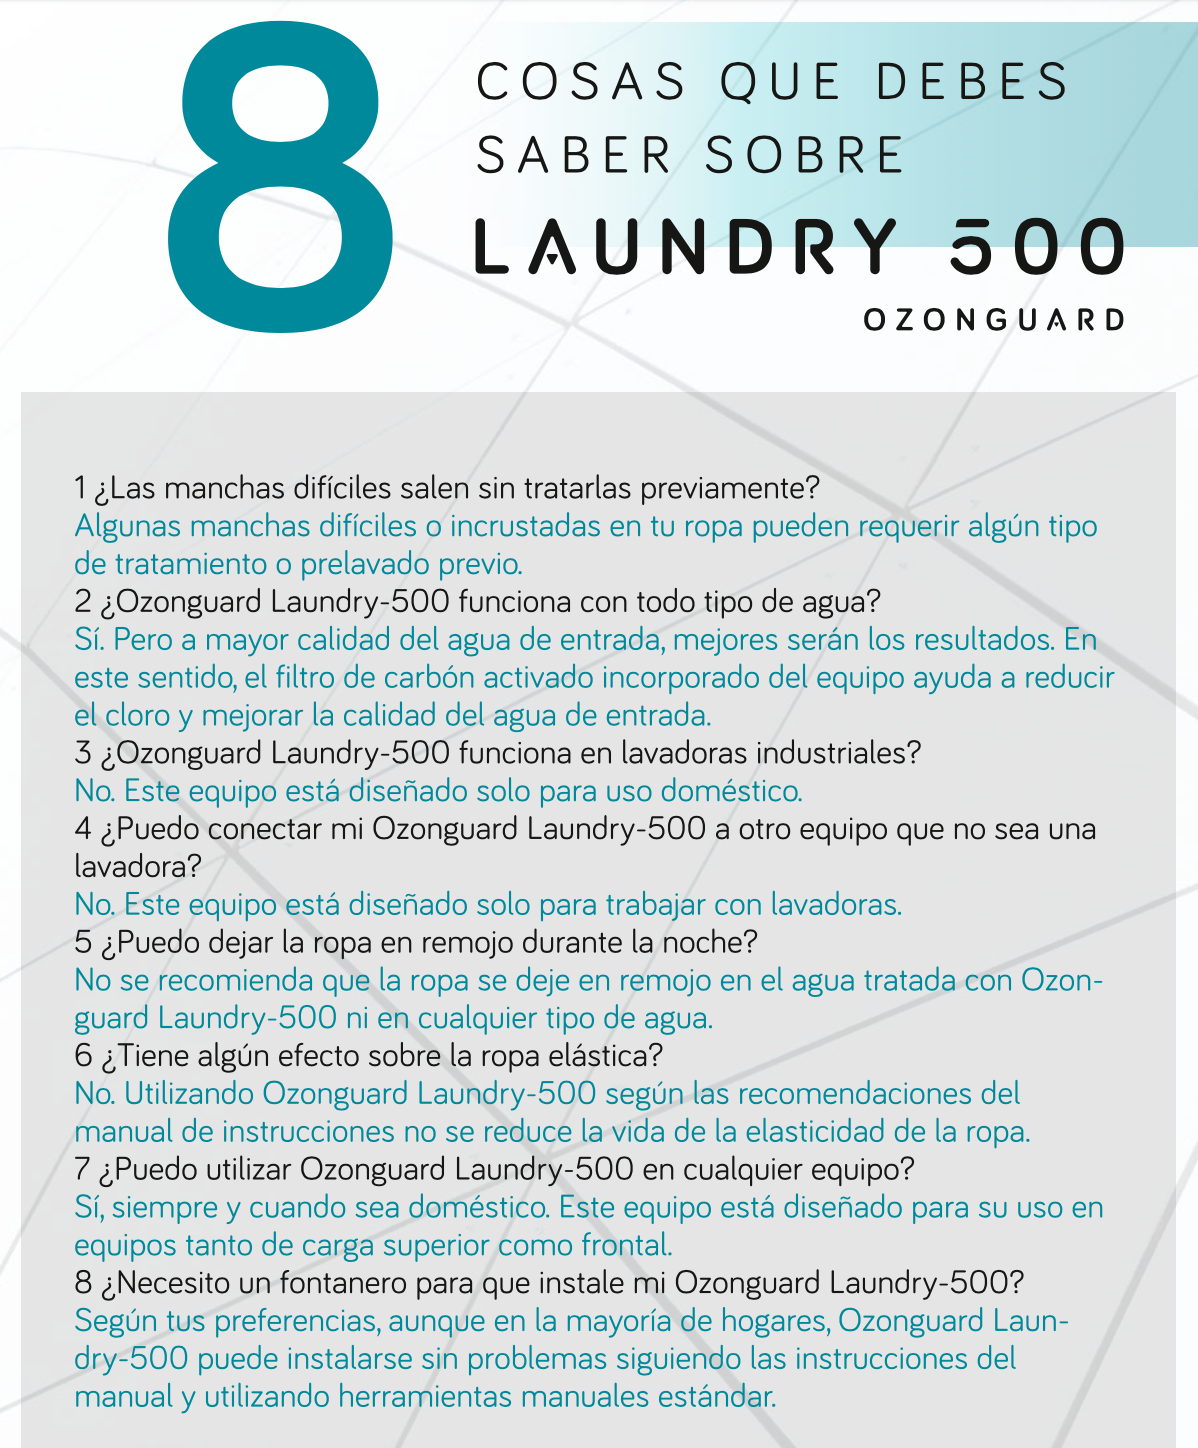 Ozonguard Laundry 500 - AguaUnika